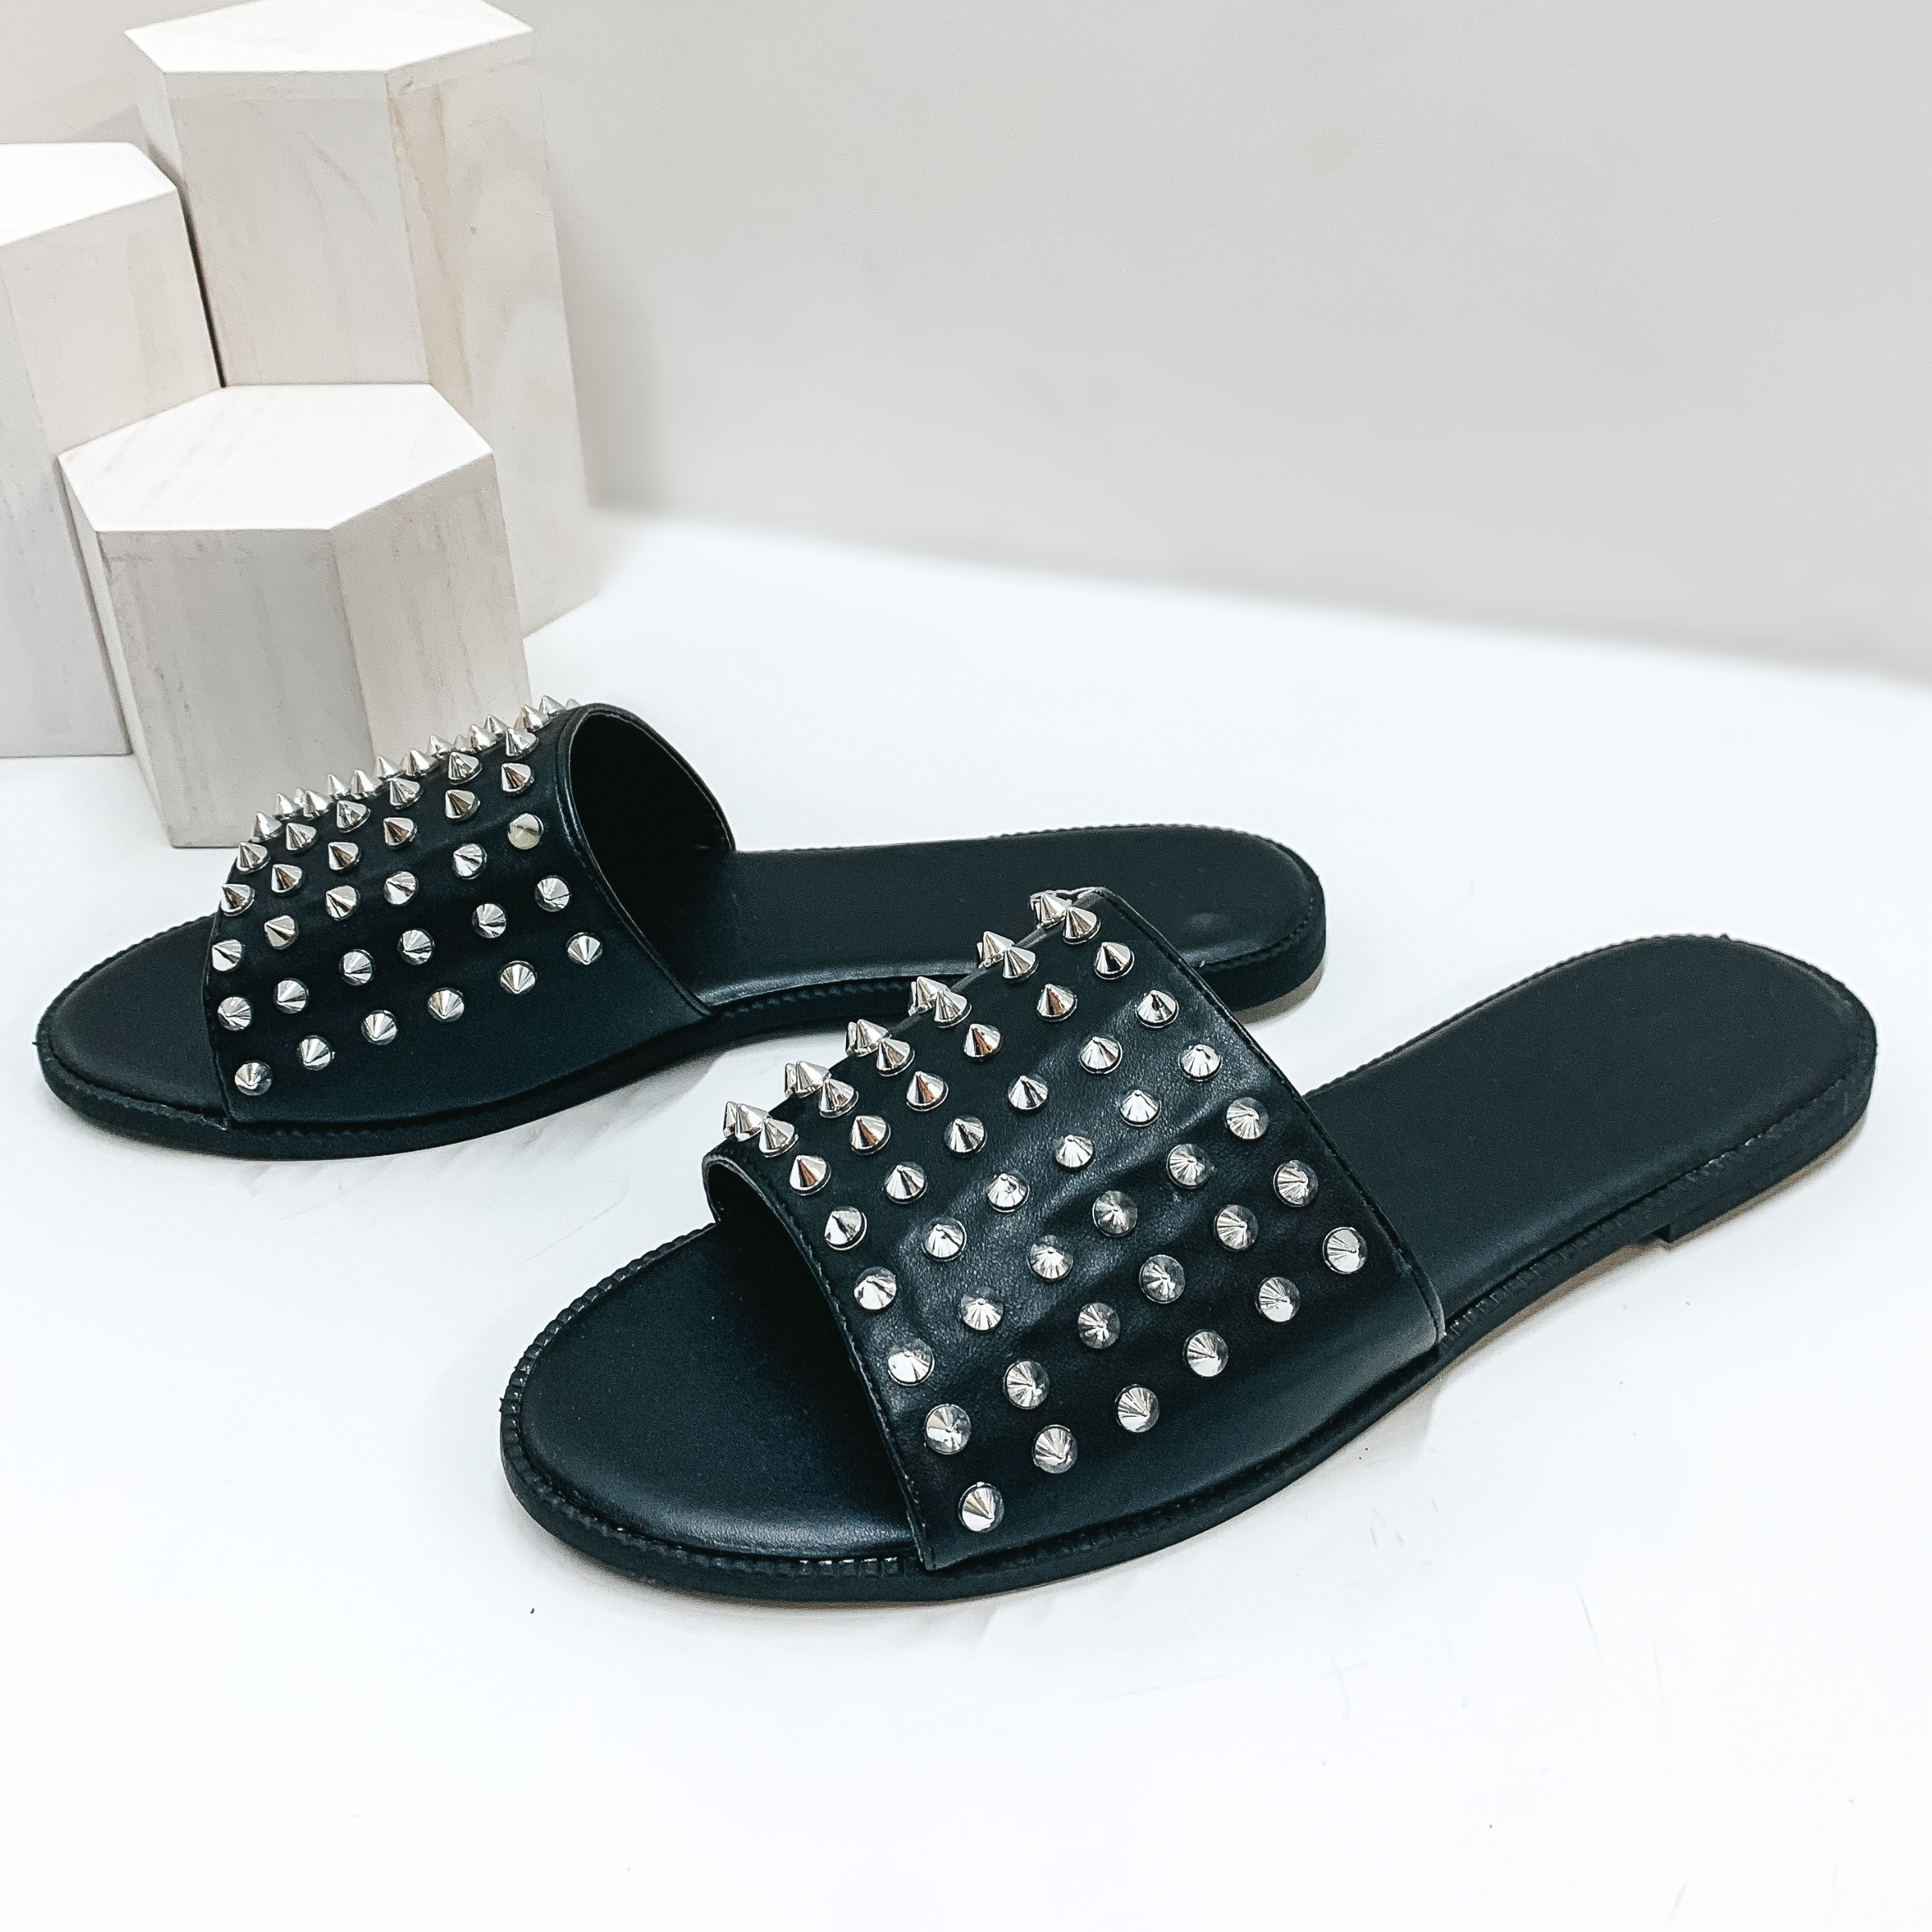 City Girl Silver Spike Embellished Slide On Sandal in Black - Giddy Up Glamour Boutique